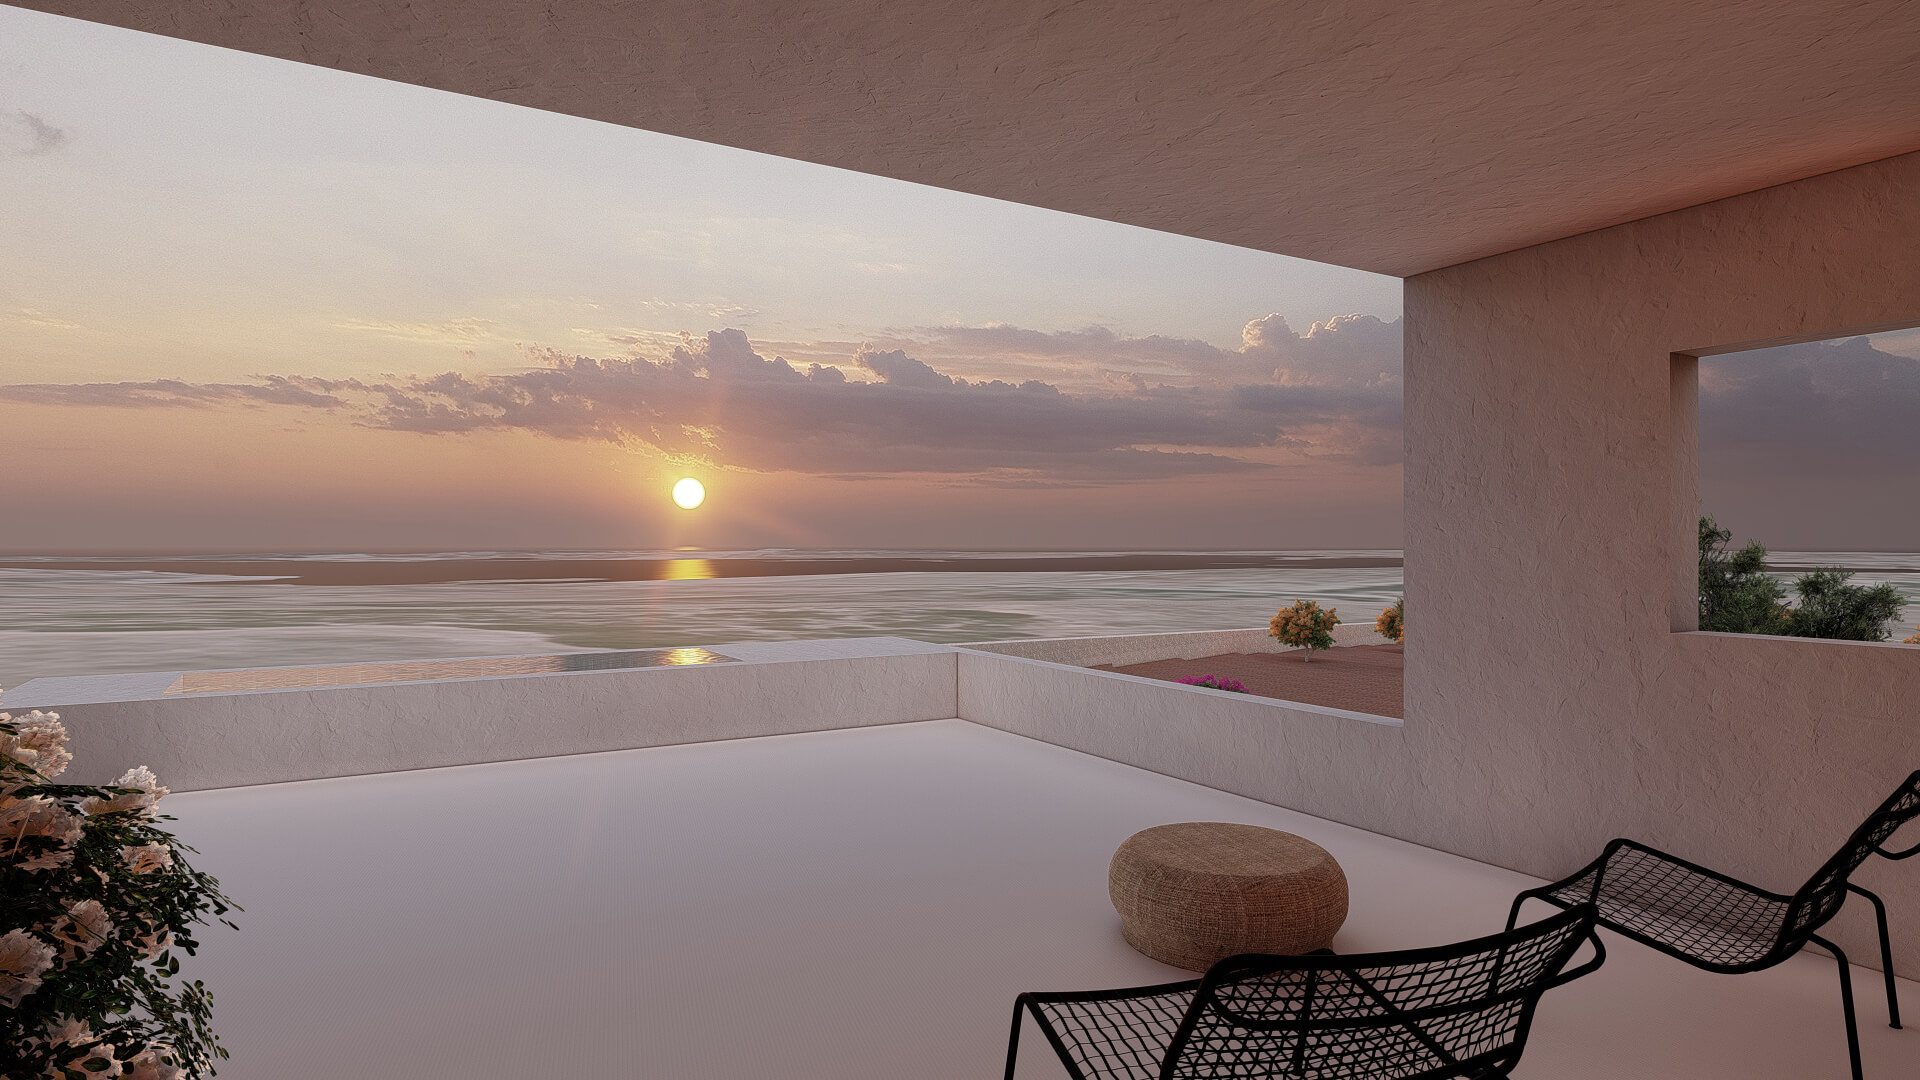 Render del proyecto Casa Aruma de KLARQ de la vista panorámica del balcón con vistas del atardecer con luz cálida al mar de Mallorca.